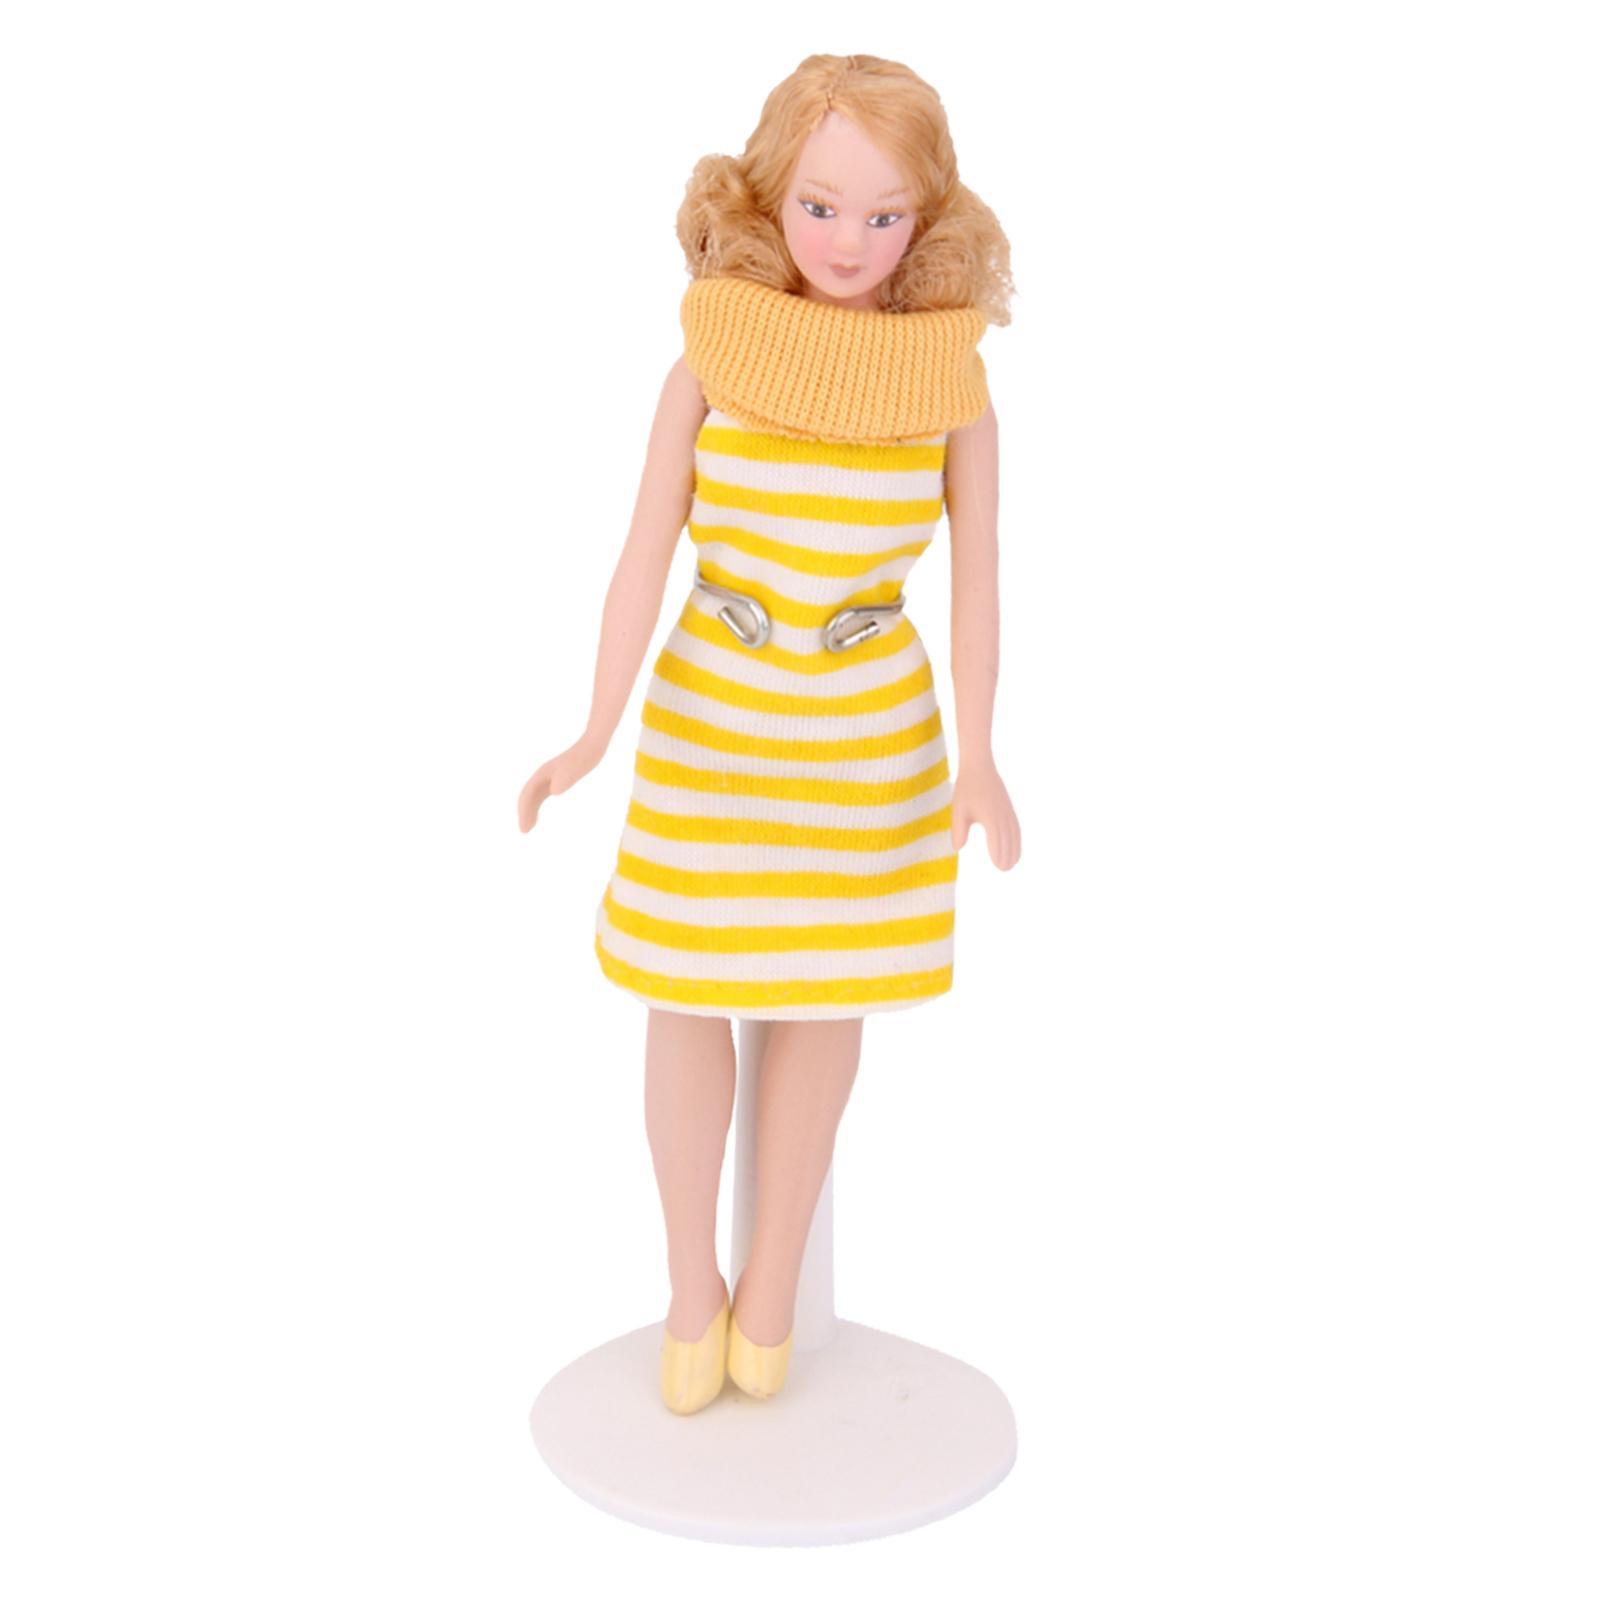 1:12 Échelle Maison de poupées miniature réglable métal adulte Doll Stand Accessoire 